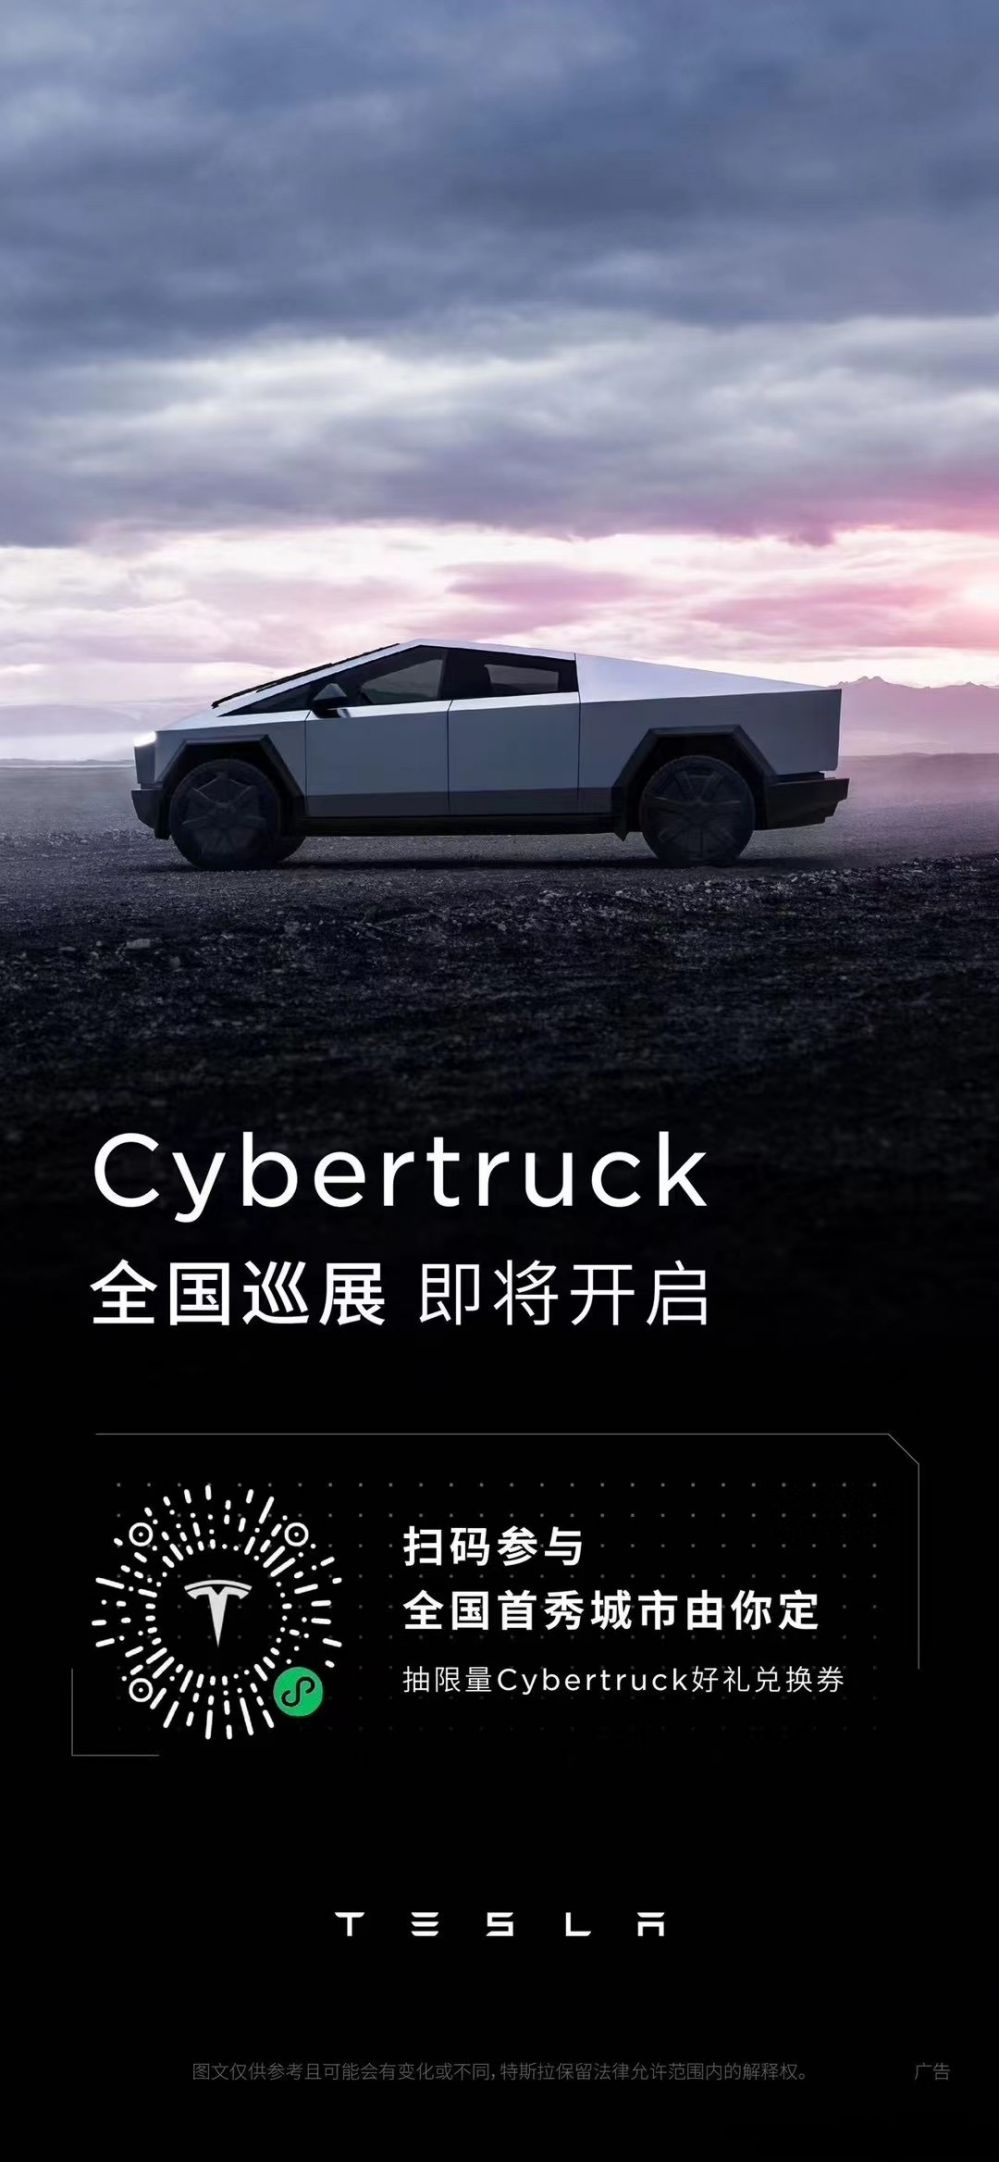 特斯拉Cybertruck皮卡车将开启中国巡展